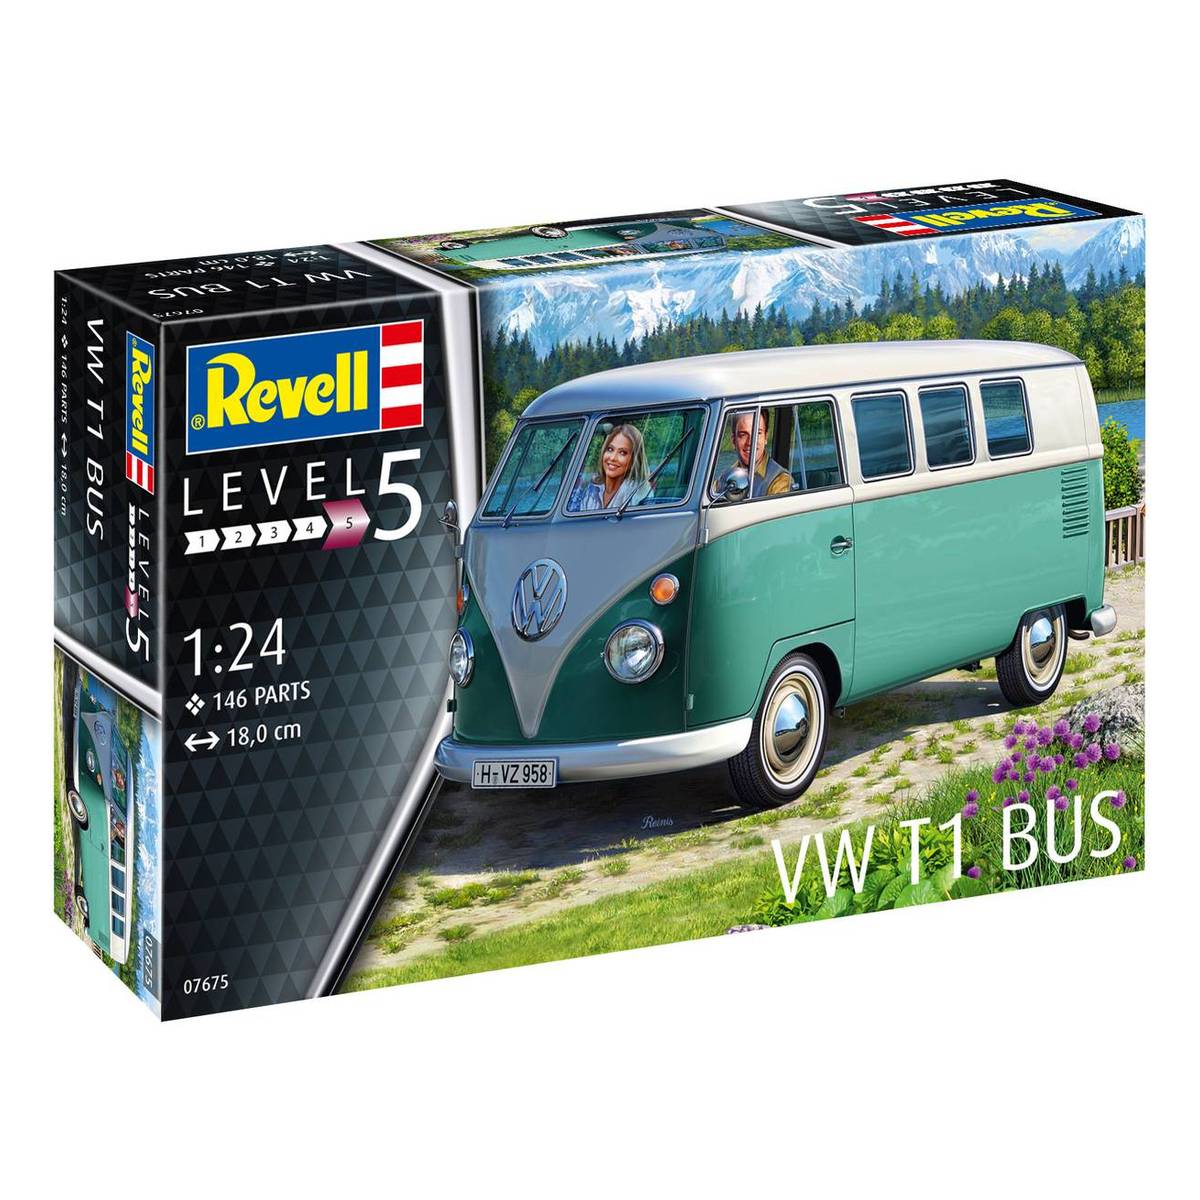 07675 Revell Volkswagen VW T1 Camper Bus 1:24 Scale Model Kit